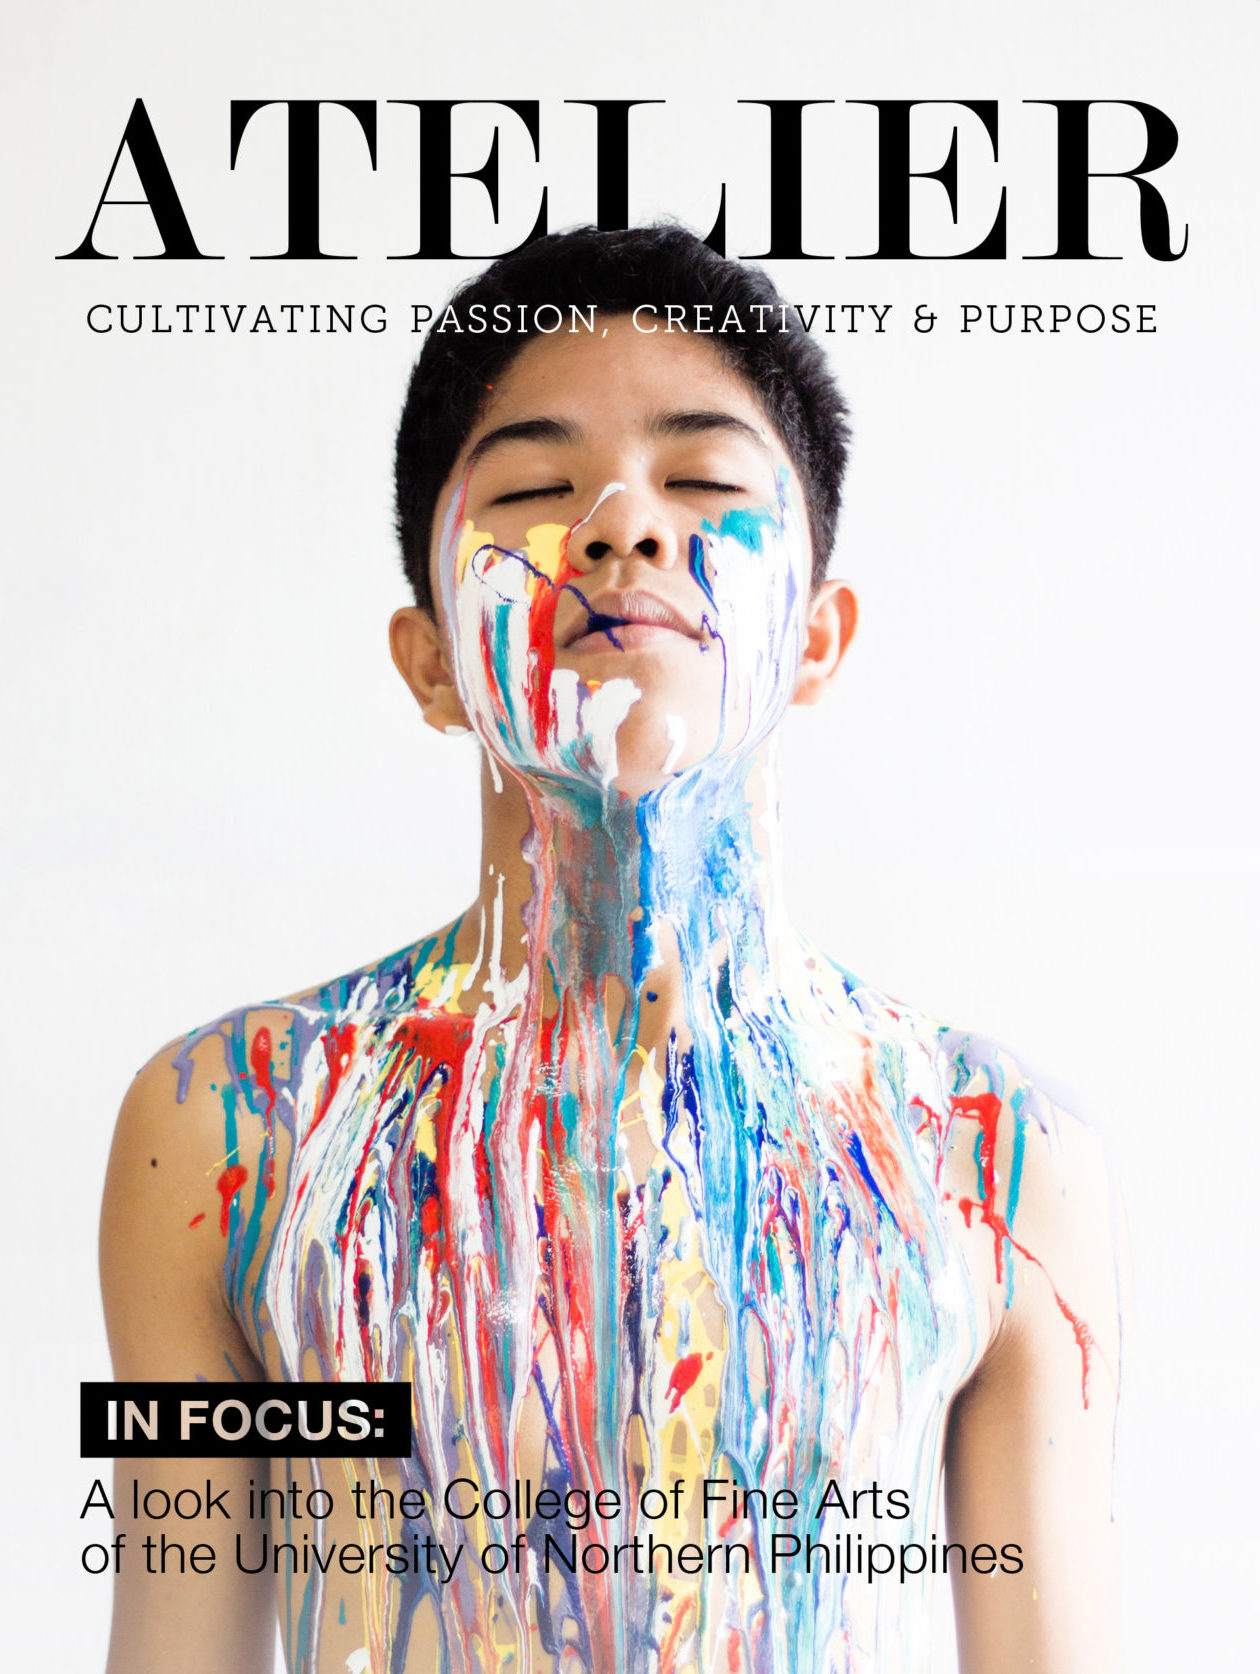 Atelier Magazine